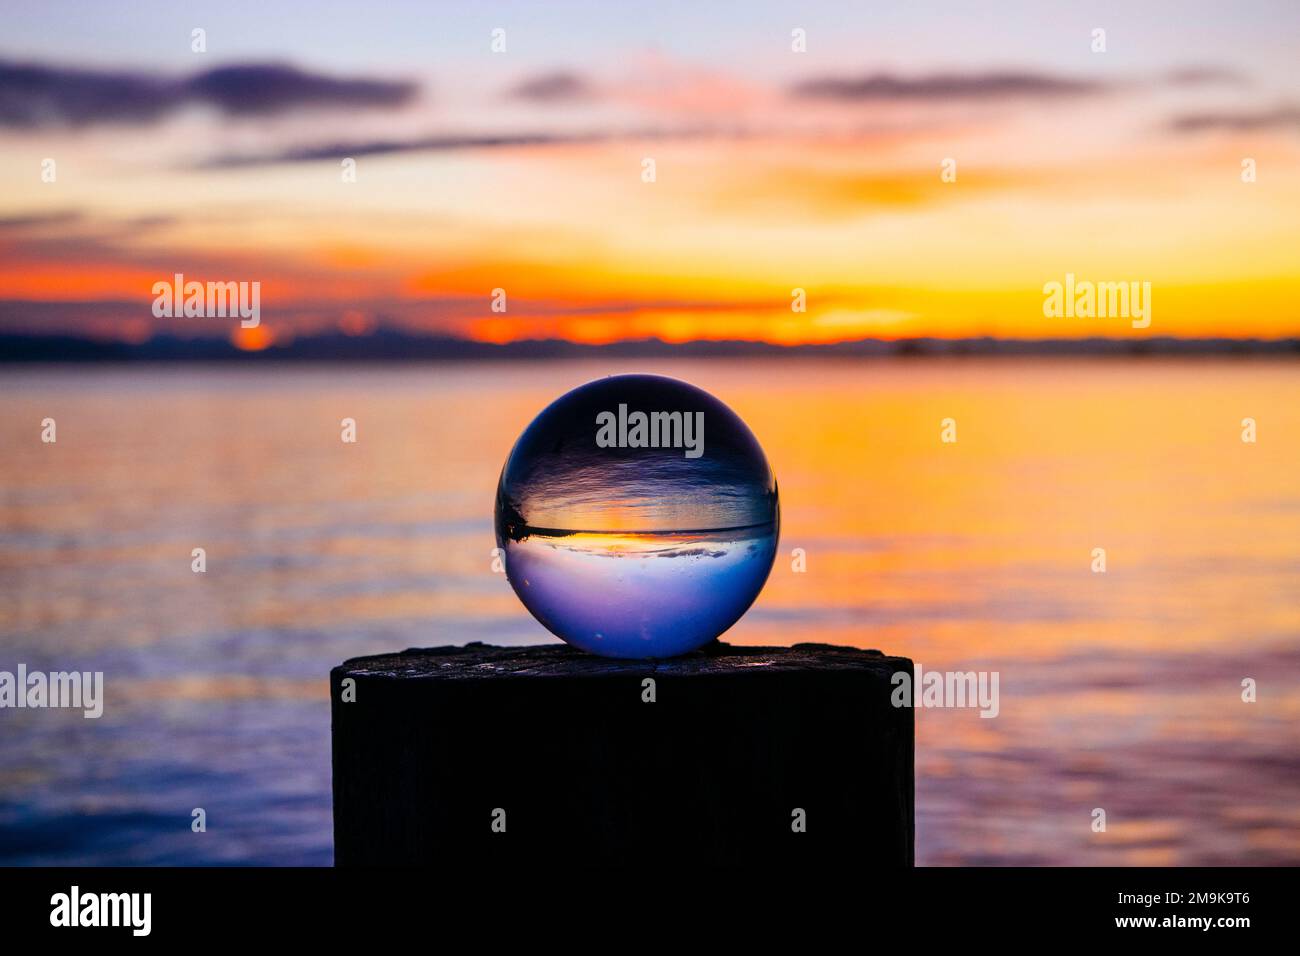 Boule de cristal sur la rive au coucher du soleil, Norwegian point County Park, Hansville, Washington, États-Unis Banque D'Images